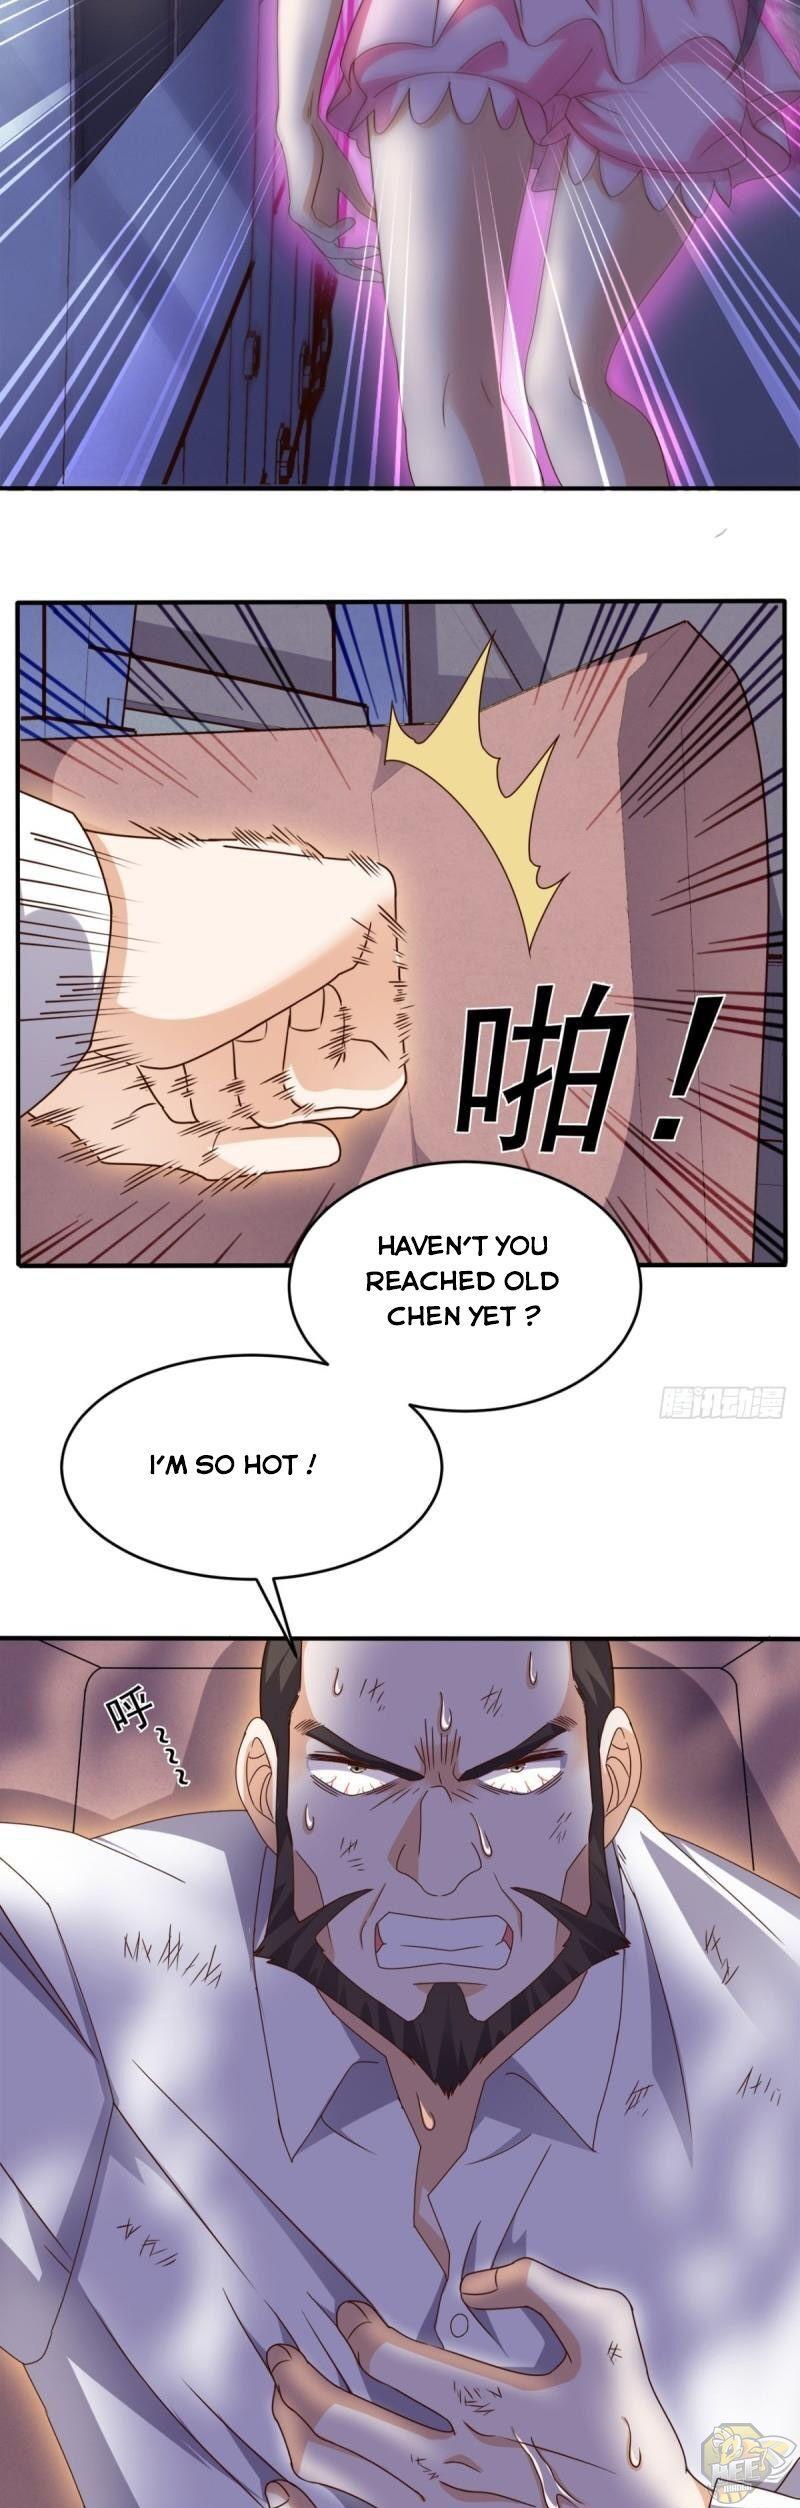 HOT Super WECHAT - Manga